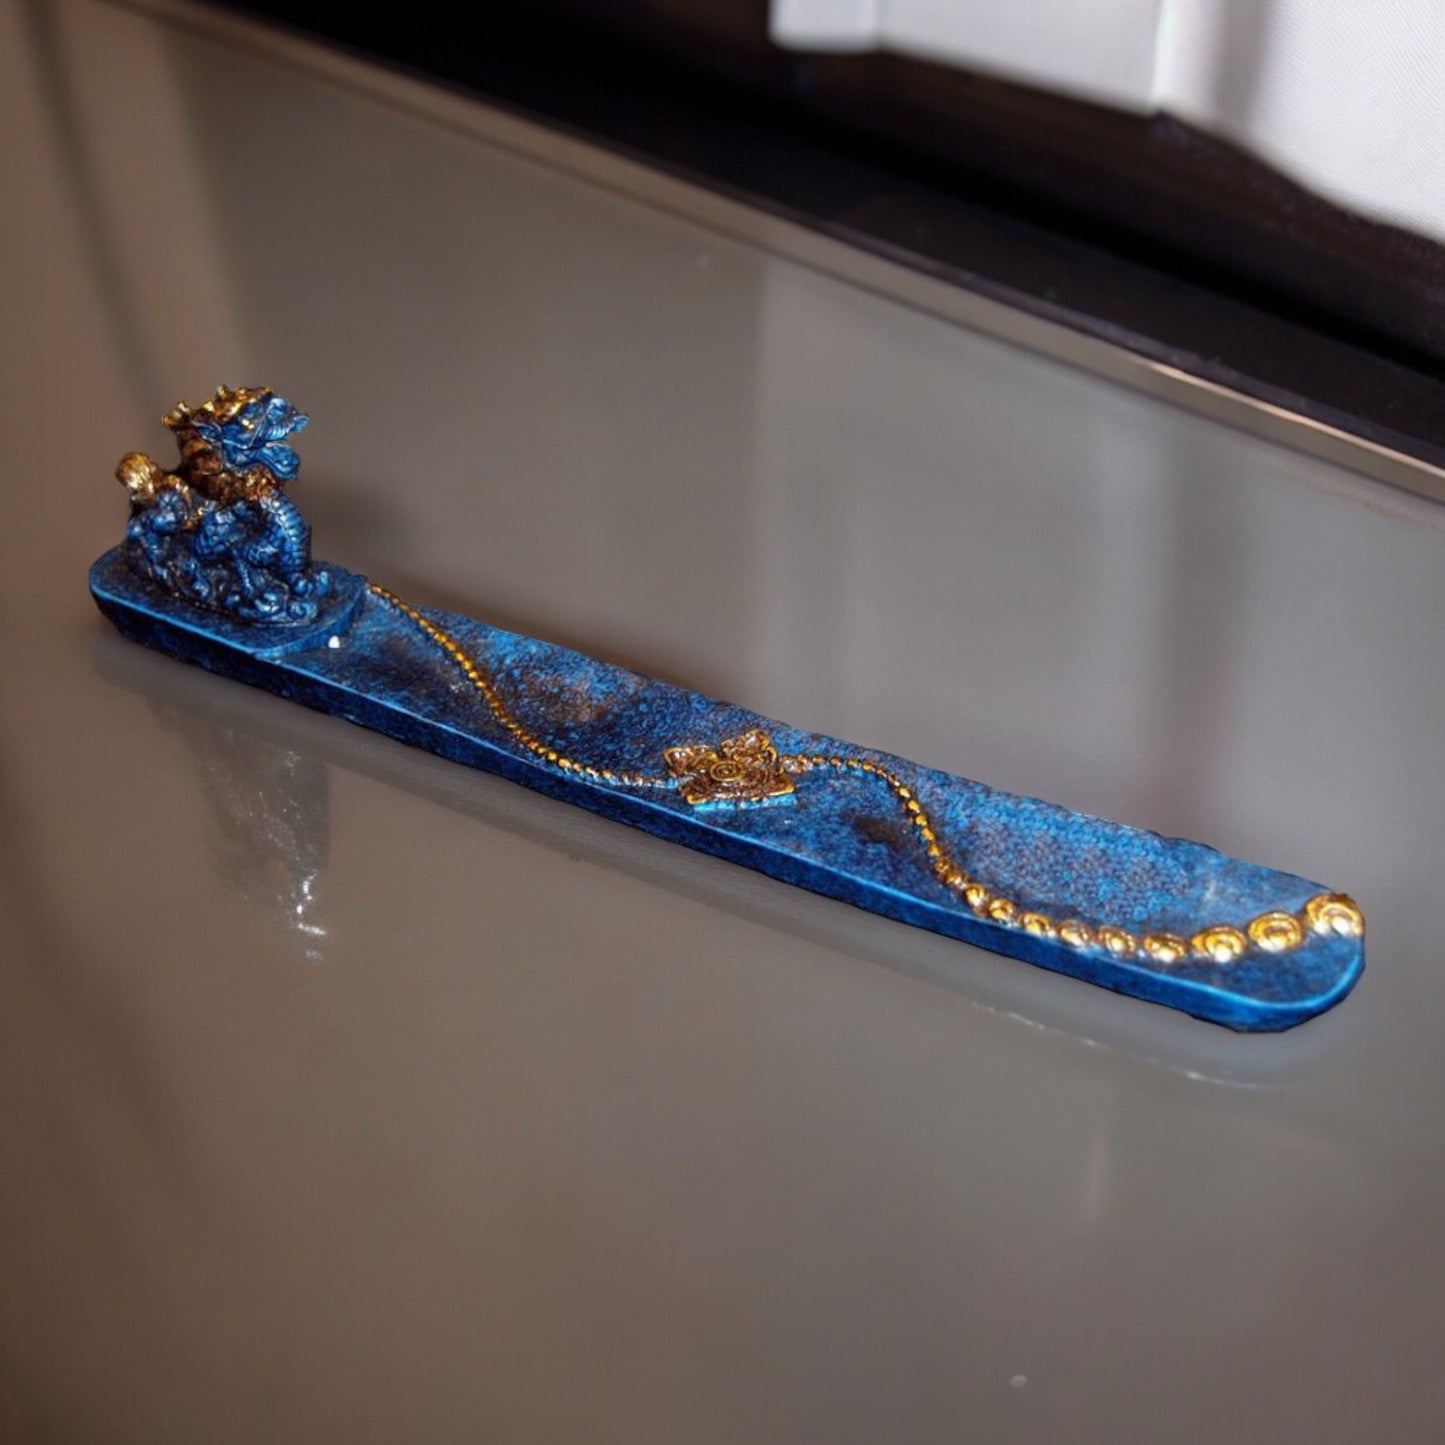 Blue Dragon 10" Stick Incense Holder